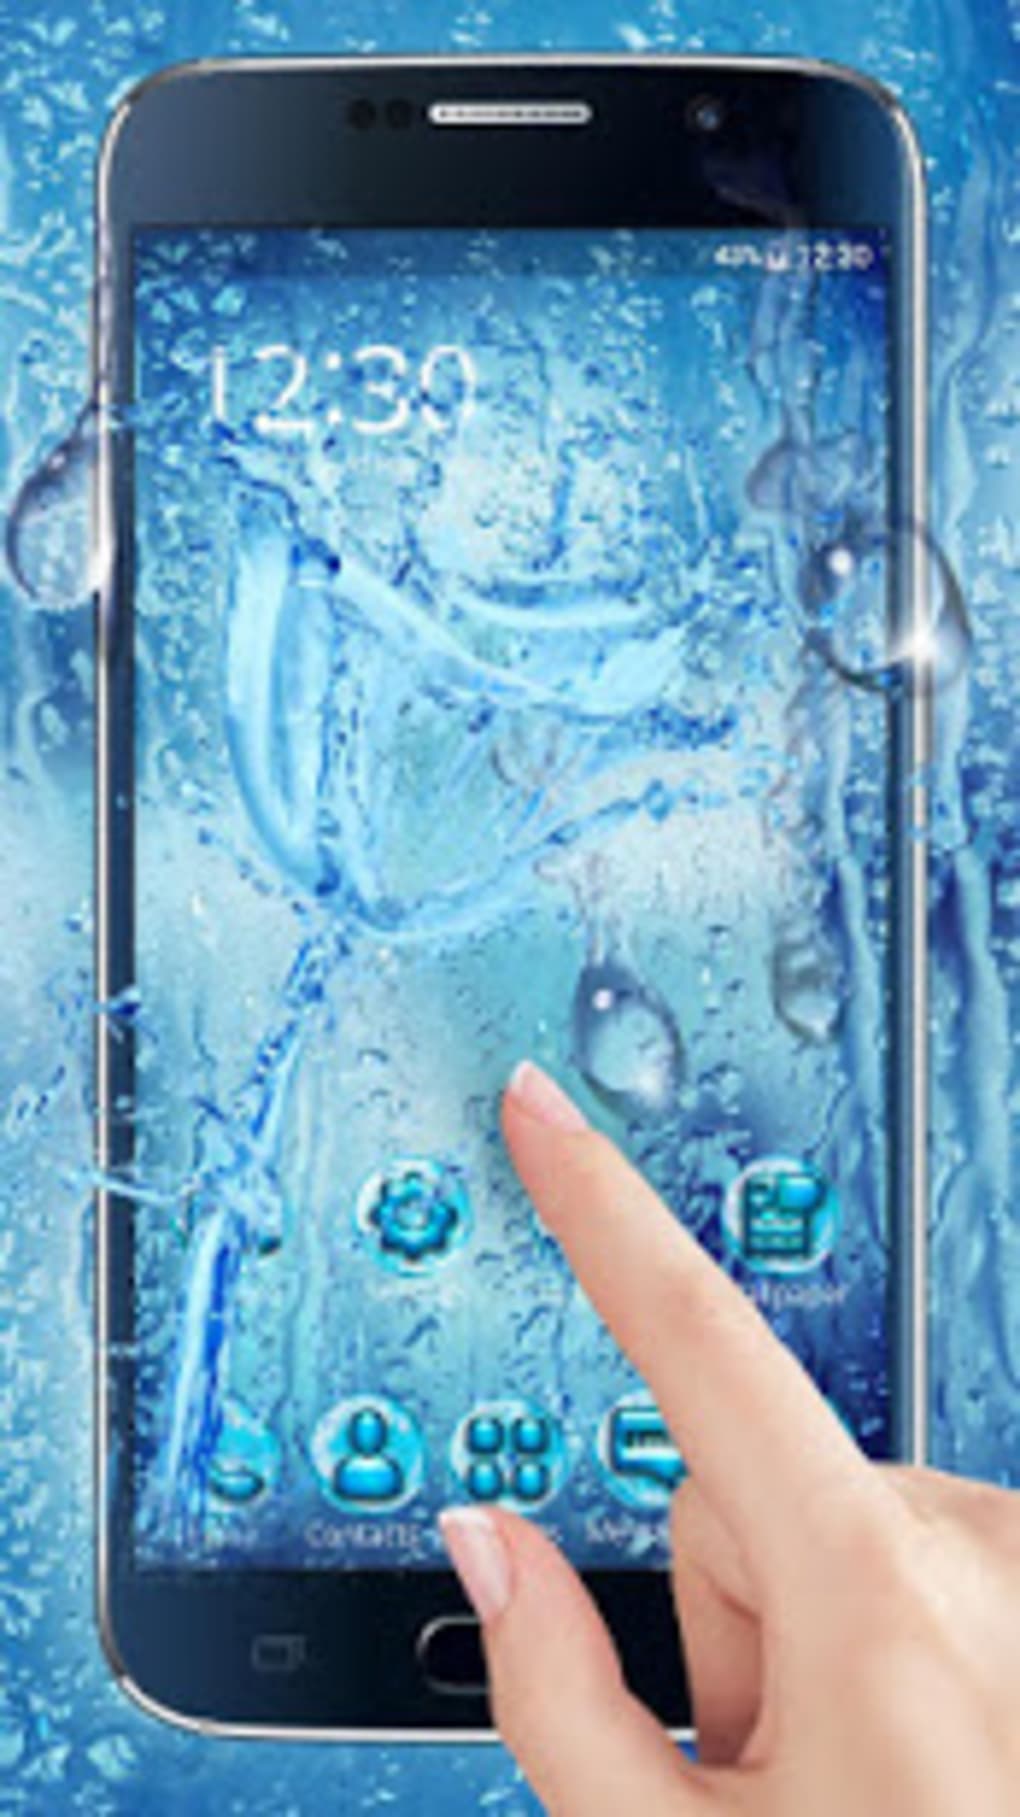 3 gocce d'acqua fresca hd wallpaper,elettronica,aggeggio,tecnologia,acqua,mano